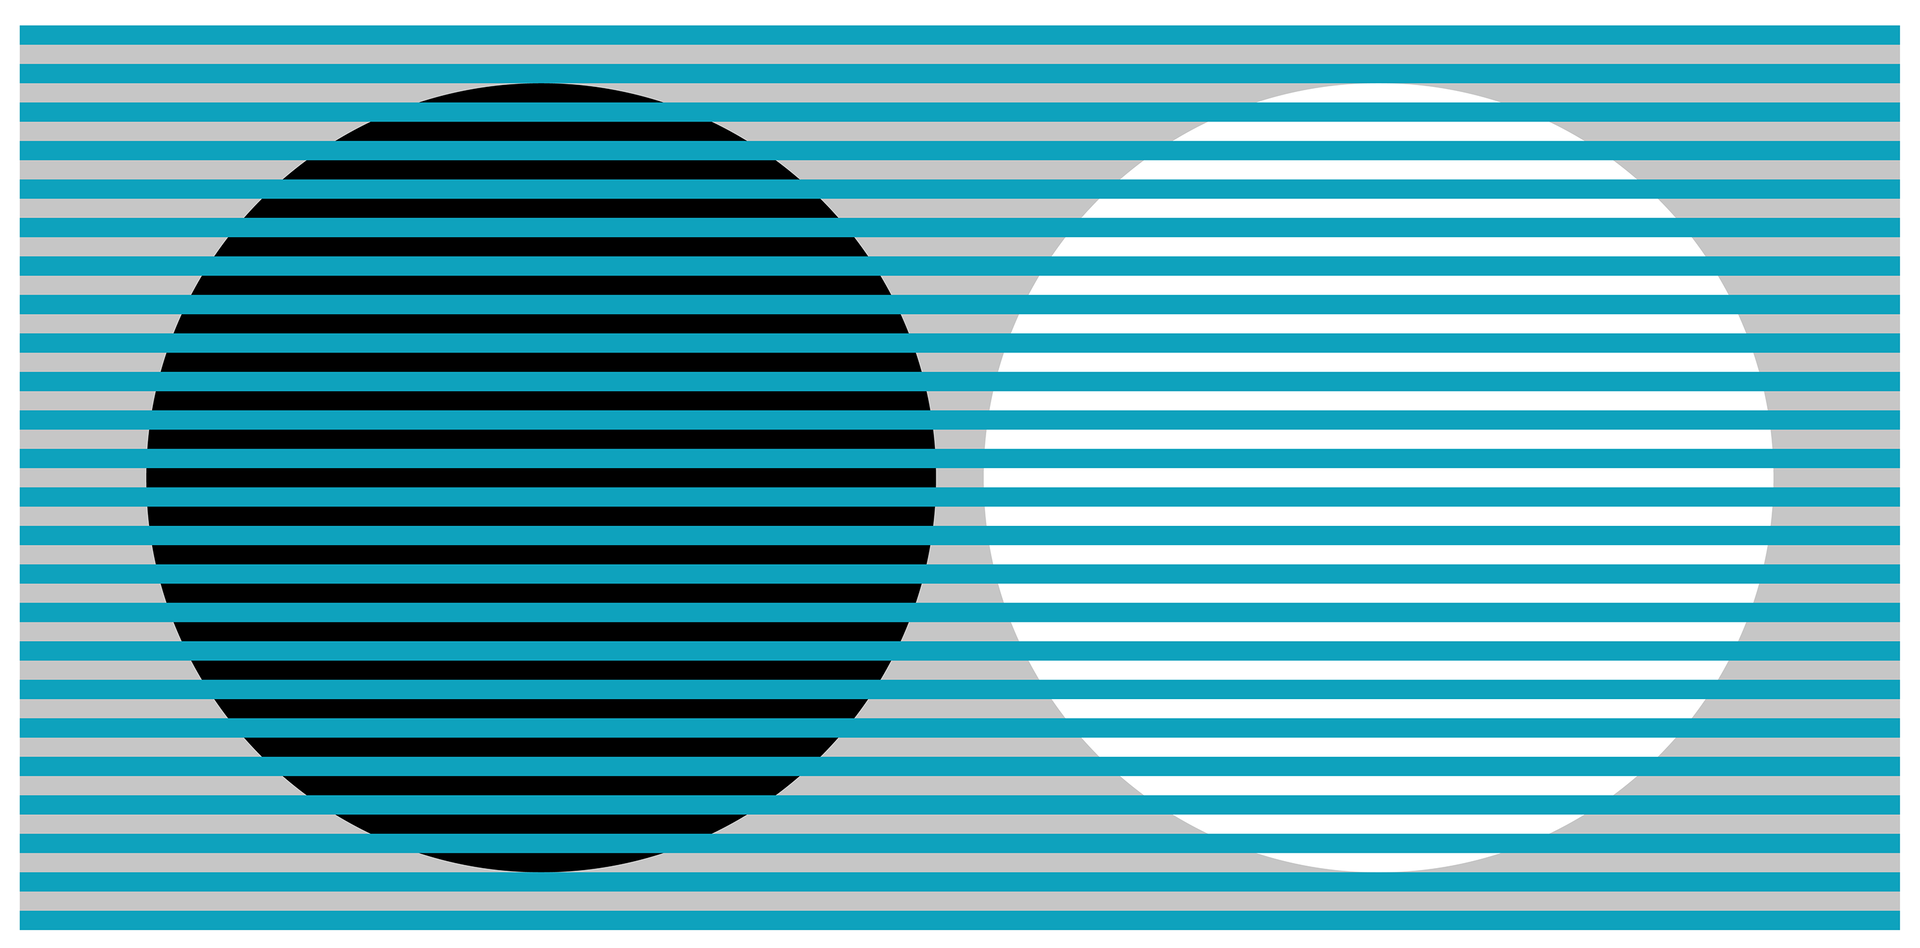 Ilustracja przedstawia dwa duże okręgi – biały i czarny na szarym tle. Przez całą ilustrację biegną turkusowe, poziome, dość wąskie, równoległe do siebie paski, rozlokowane w takich samych odległościach jak ich grubość, które przecinają również okręgi. 